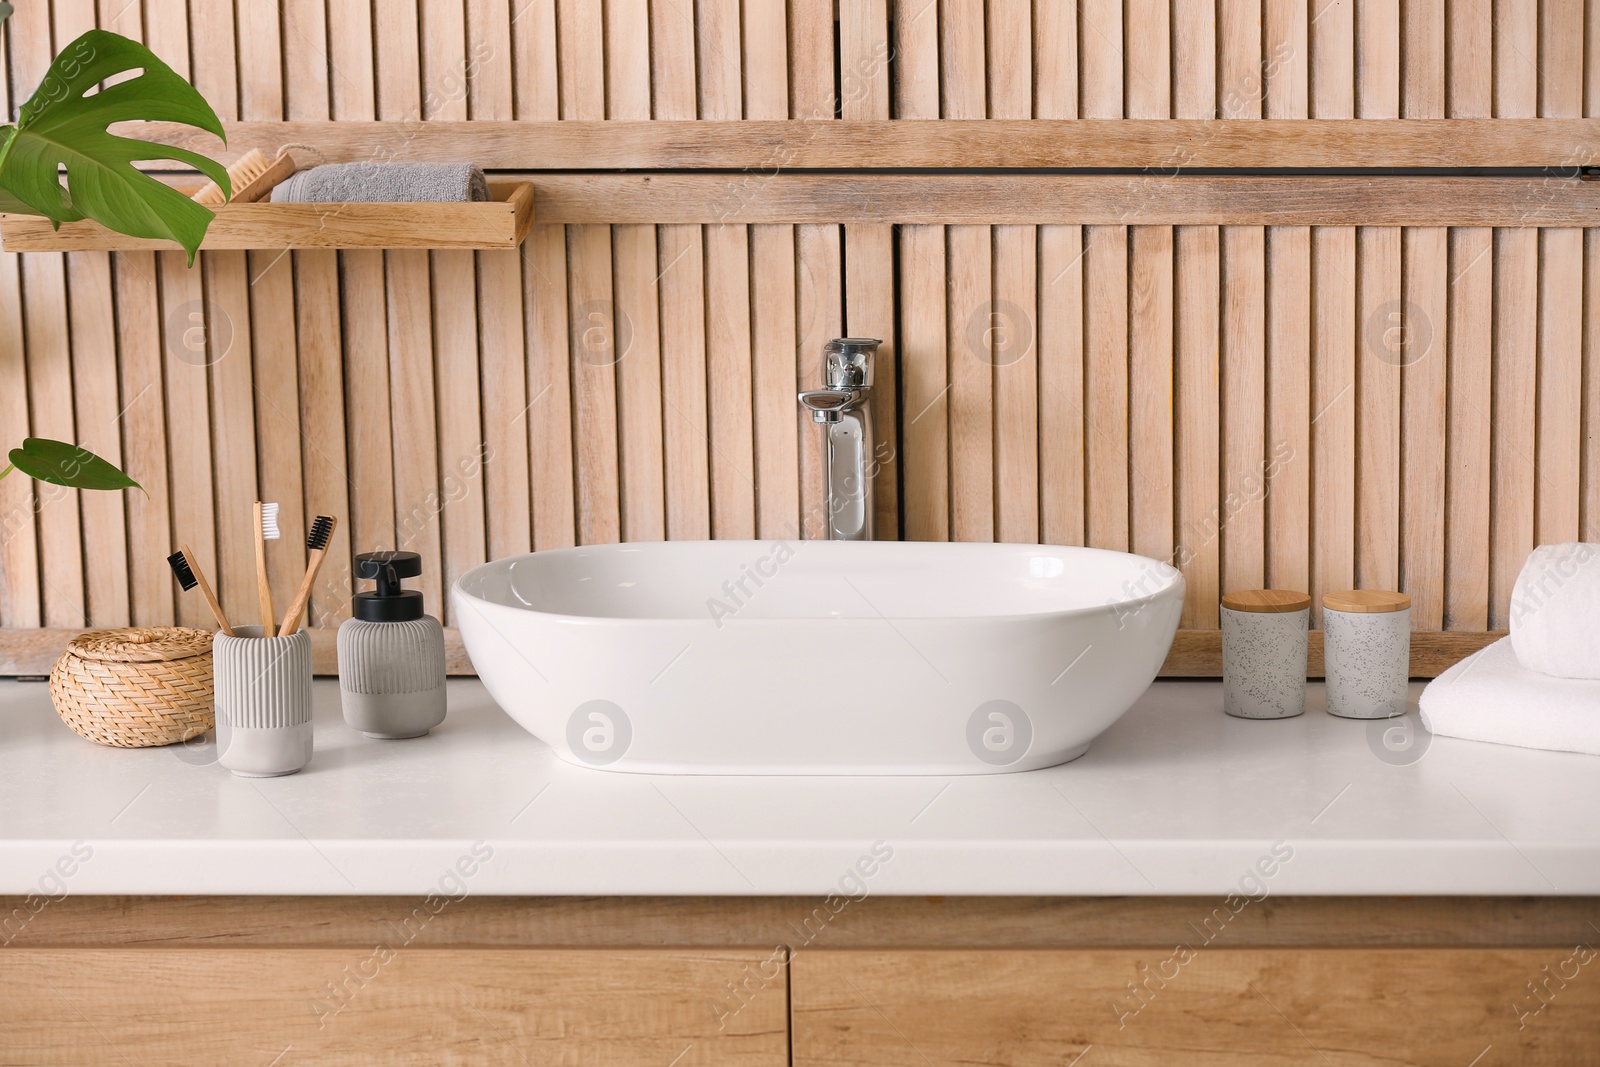 Photo of Stylish vessel sink near wooden wall in modern bathroom